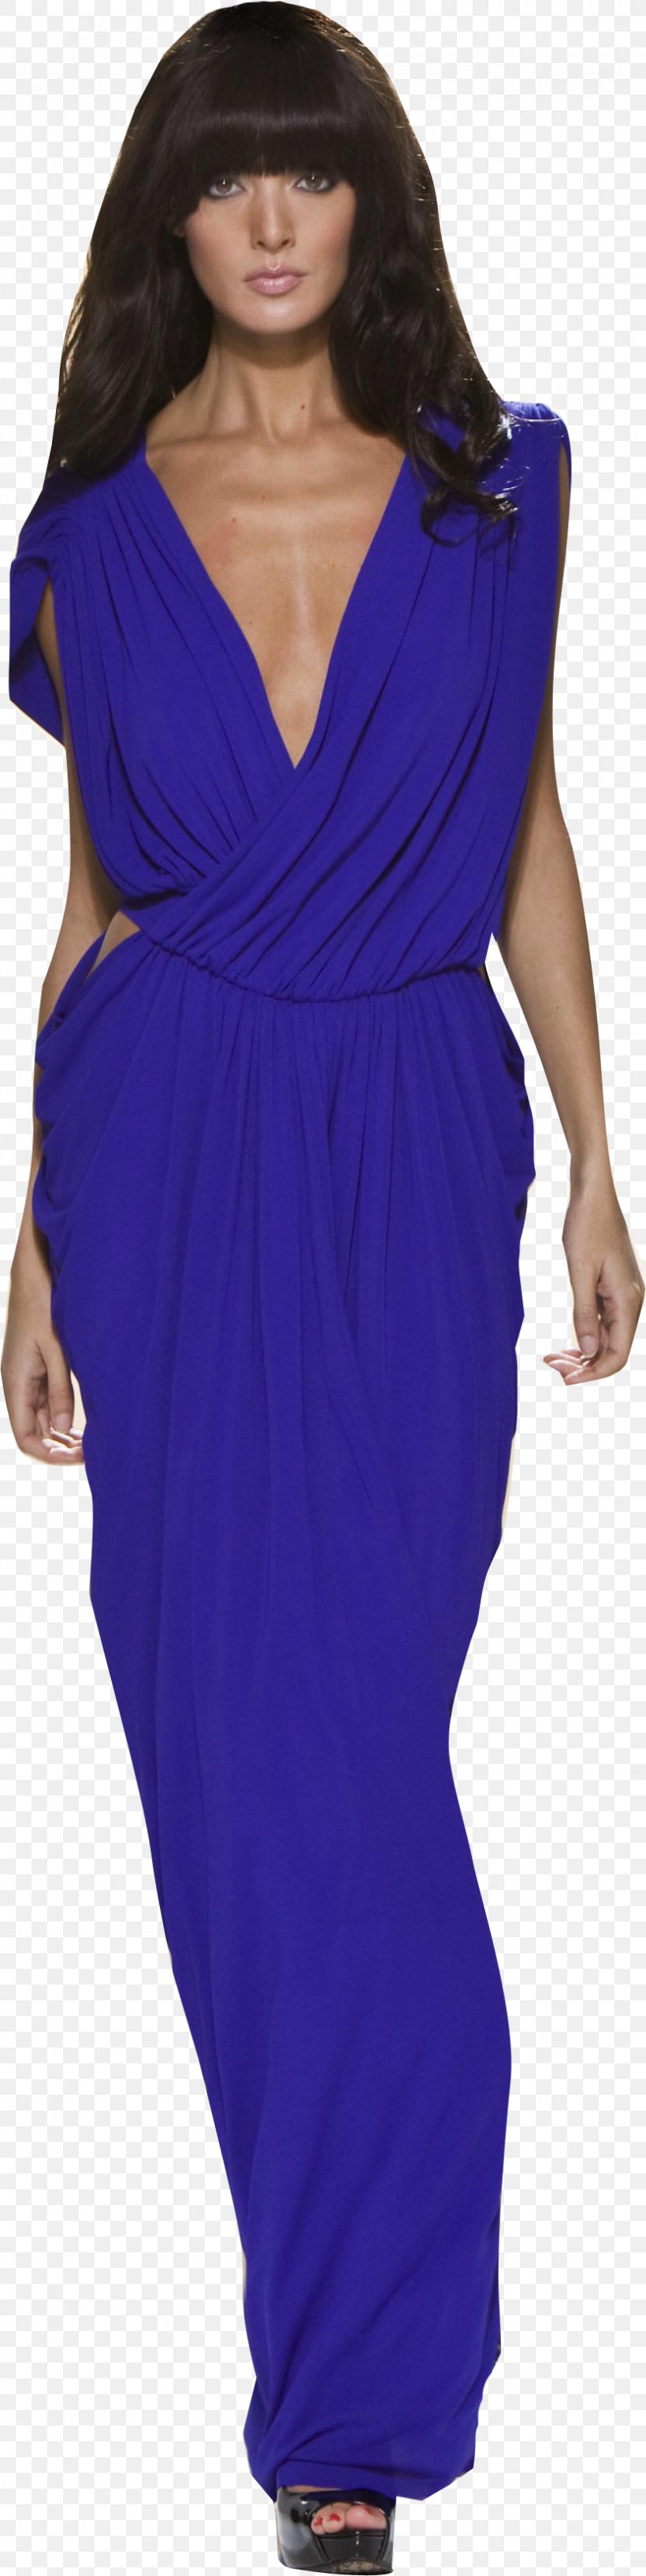 Shoulder Cobalt Blue Cocktail Dress, PNG, 832x3319px, Shoulder, Blue, Clothing, Cobalt, Cobalt Blue Download Free